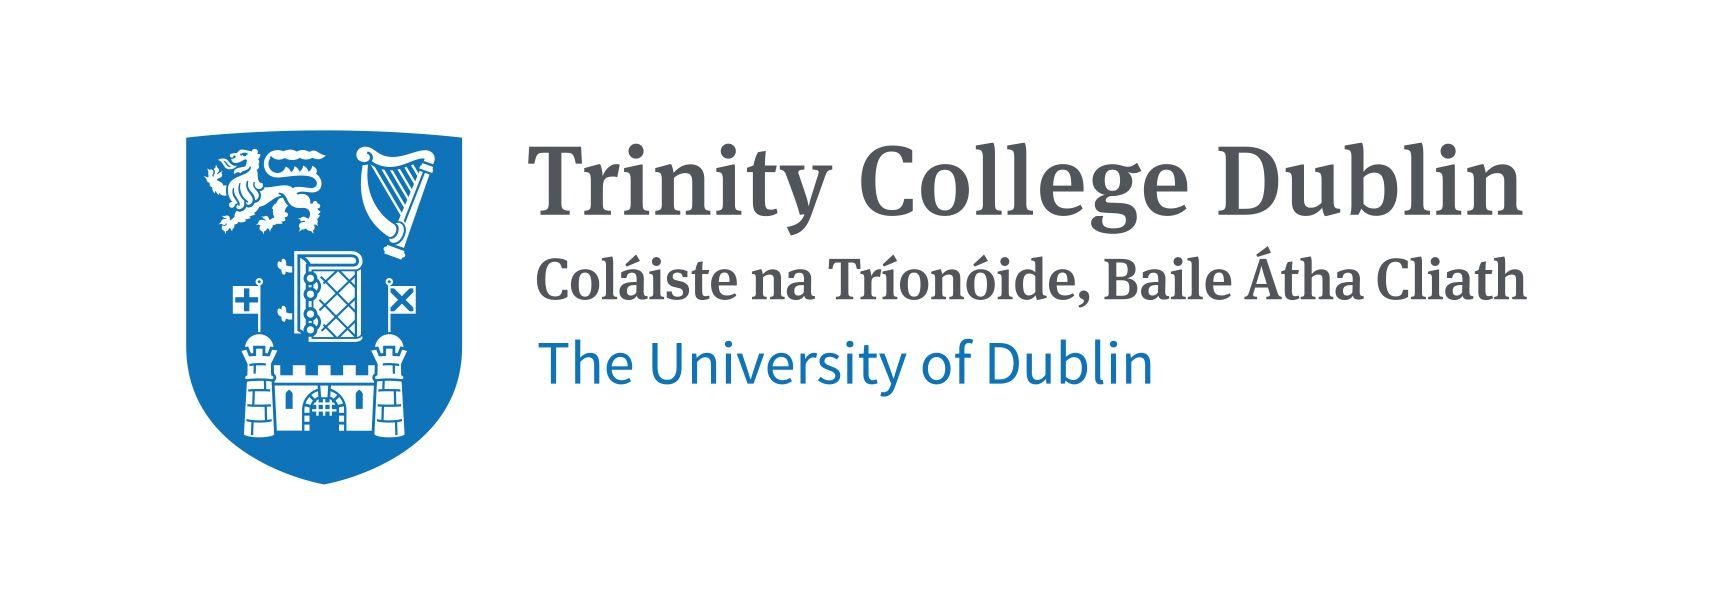 Trinity Logo - Trinity College Dublin, the University of Dublin, Ireland